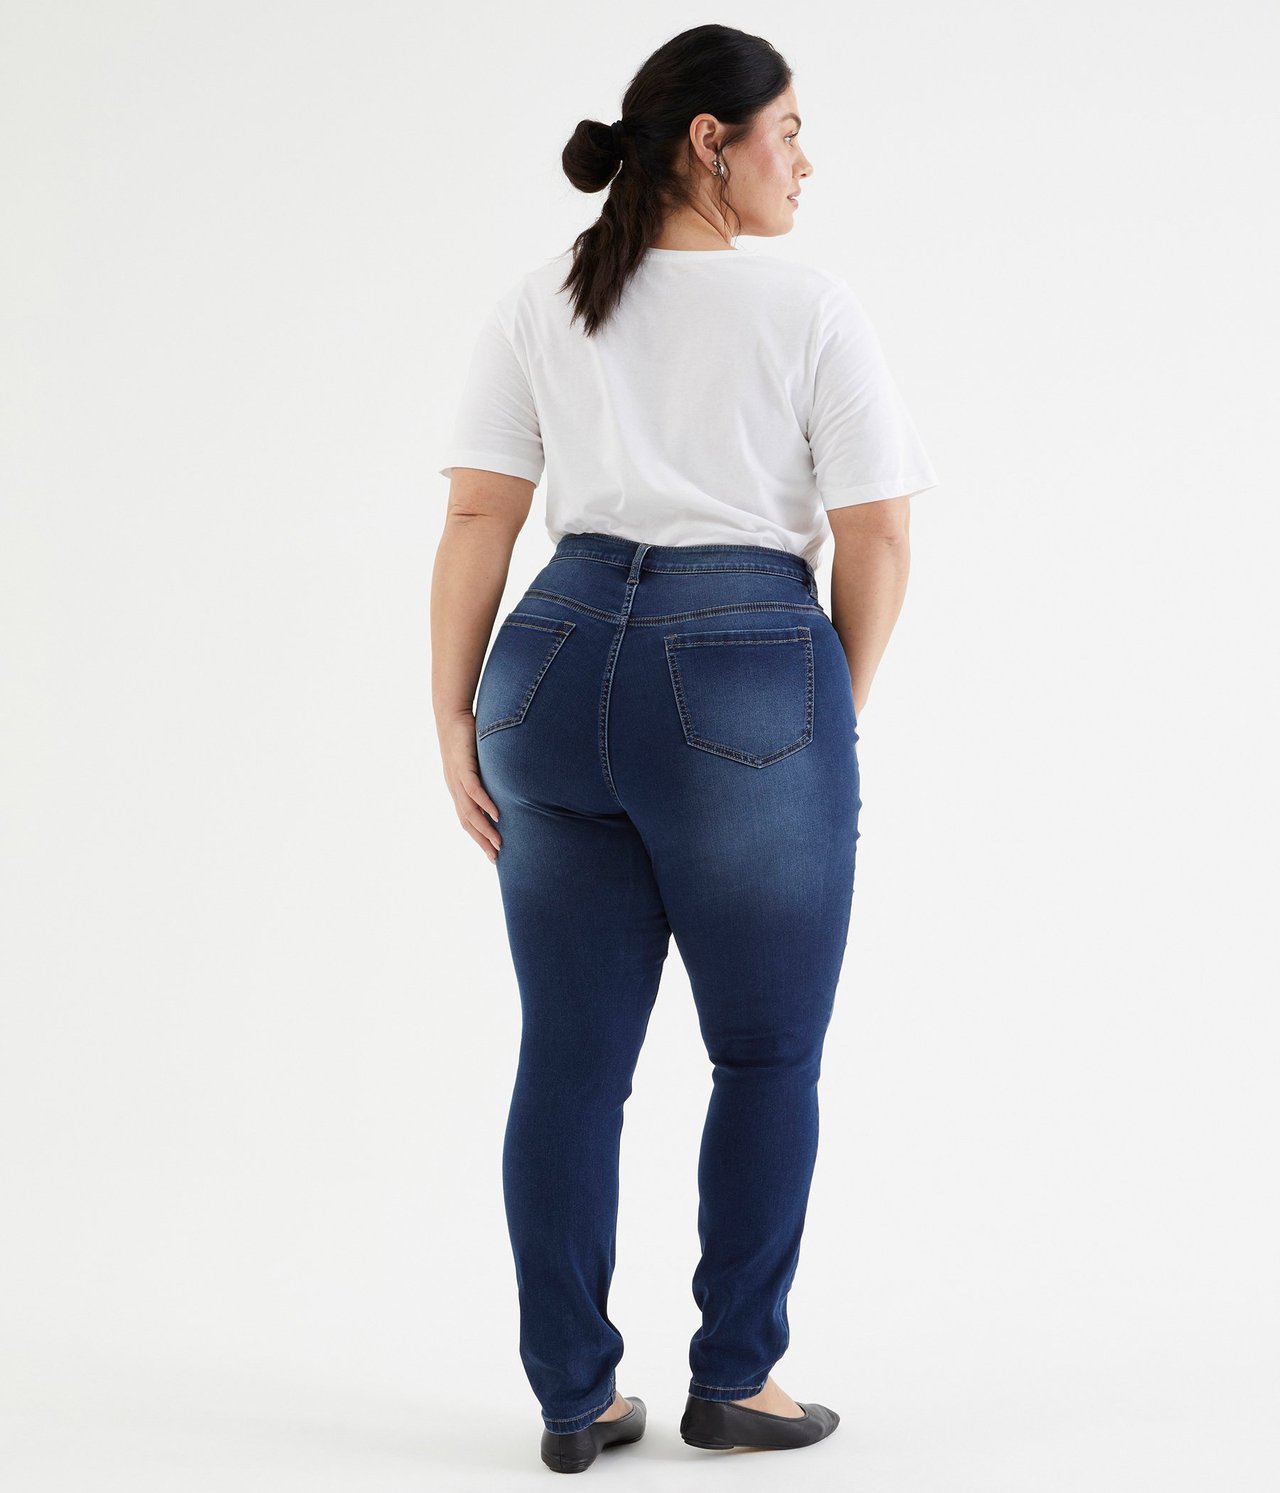 Ebba slim jeans extra long leg Mørk denim - null - 2